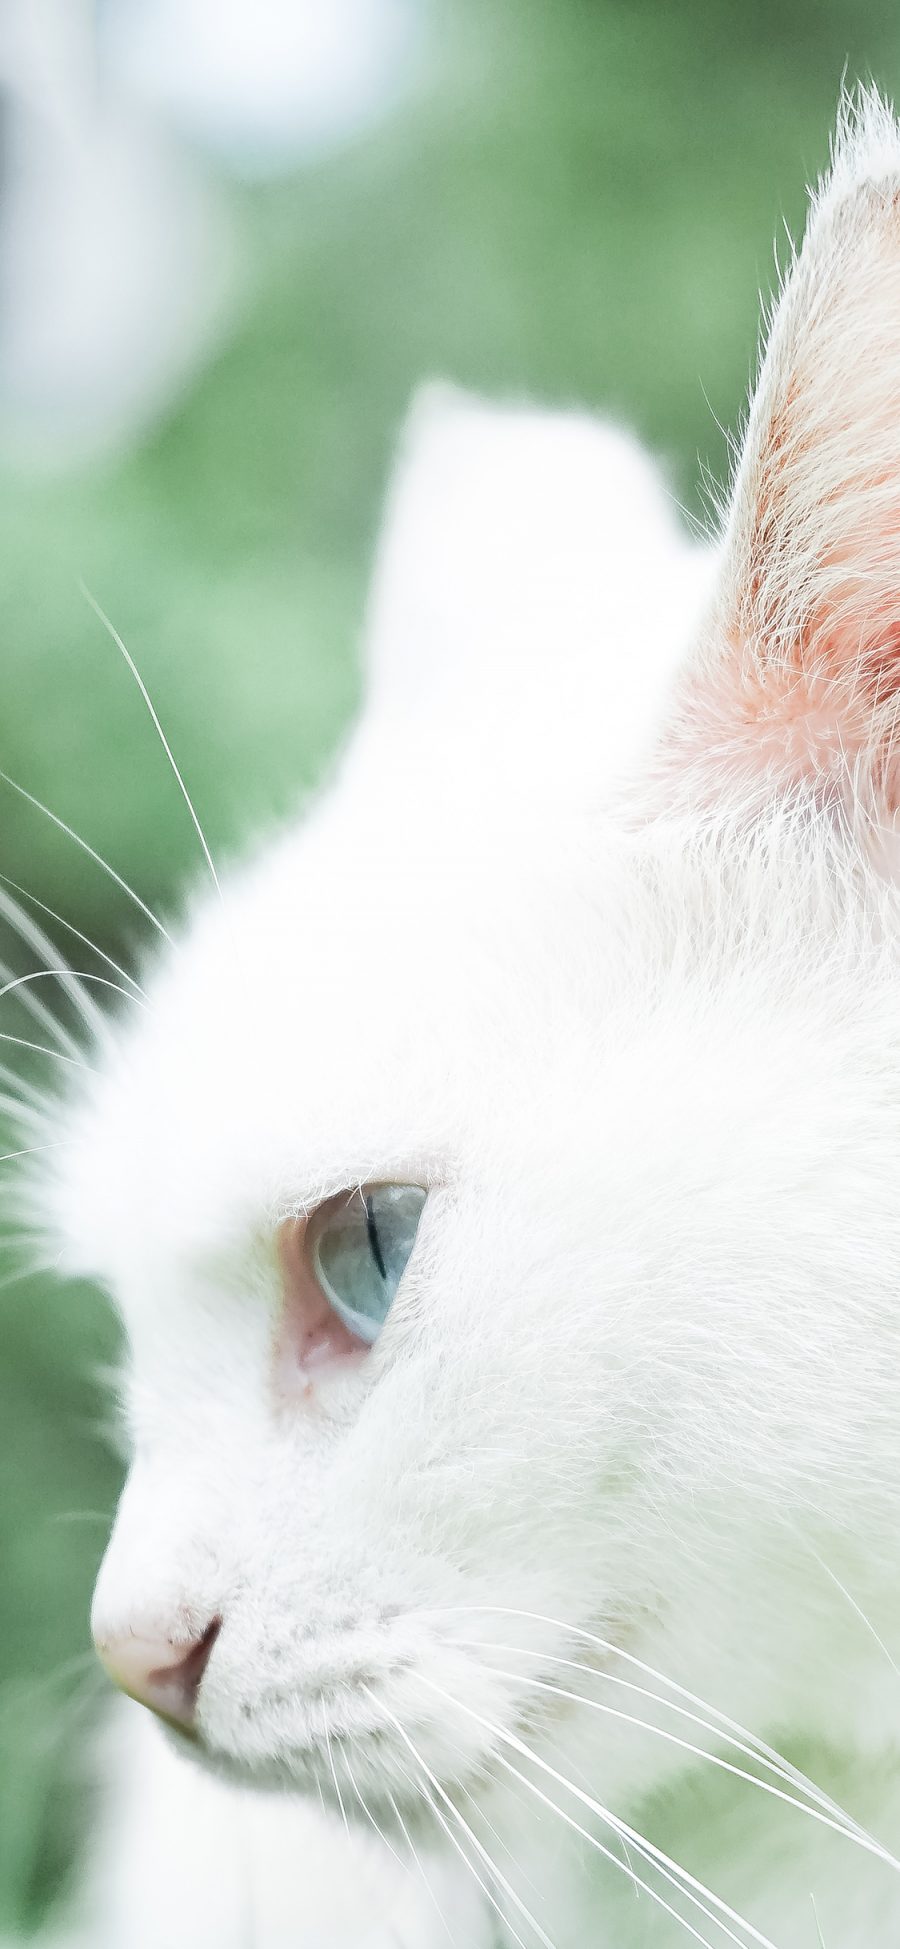 [2436×1125]白猫 猫咪 宠物 可爱 喵星人 萌 苹果手机壁纸图片